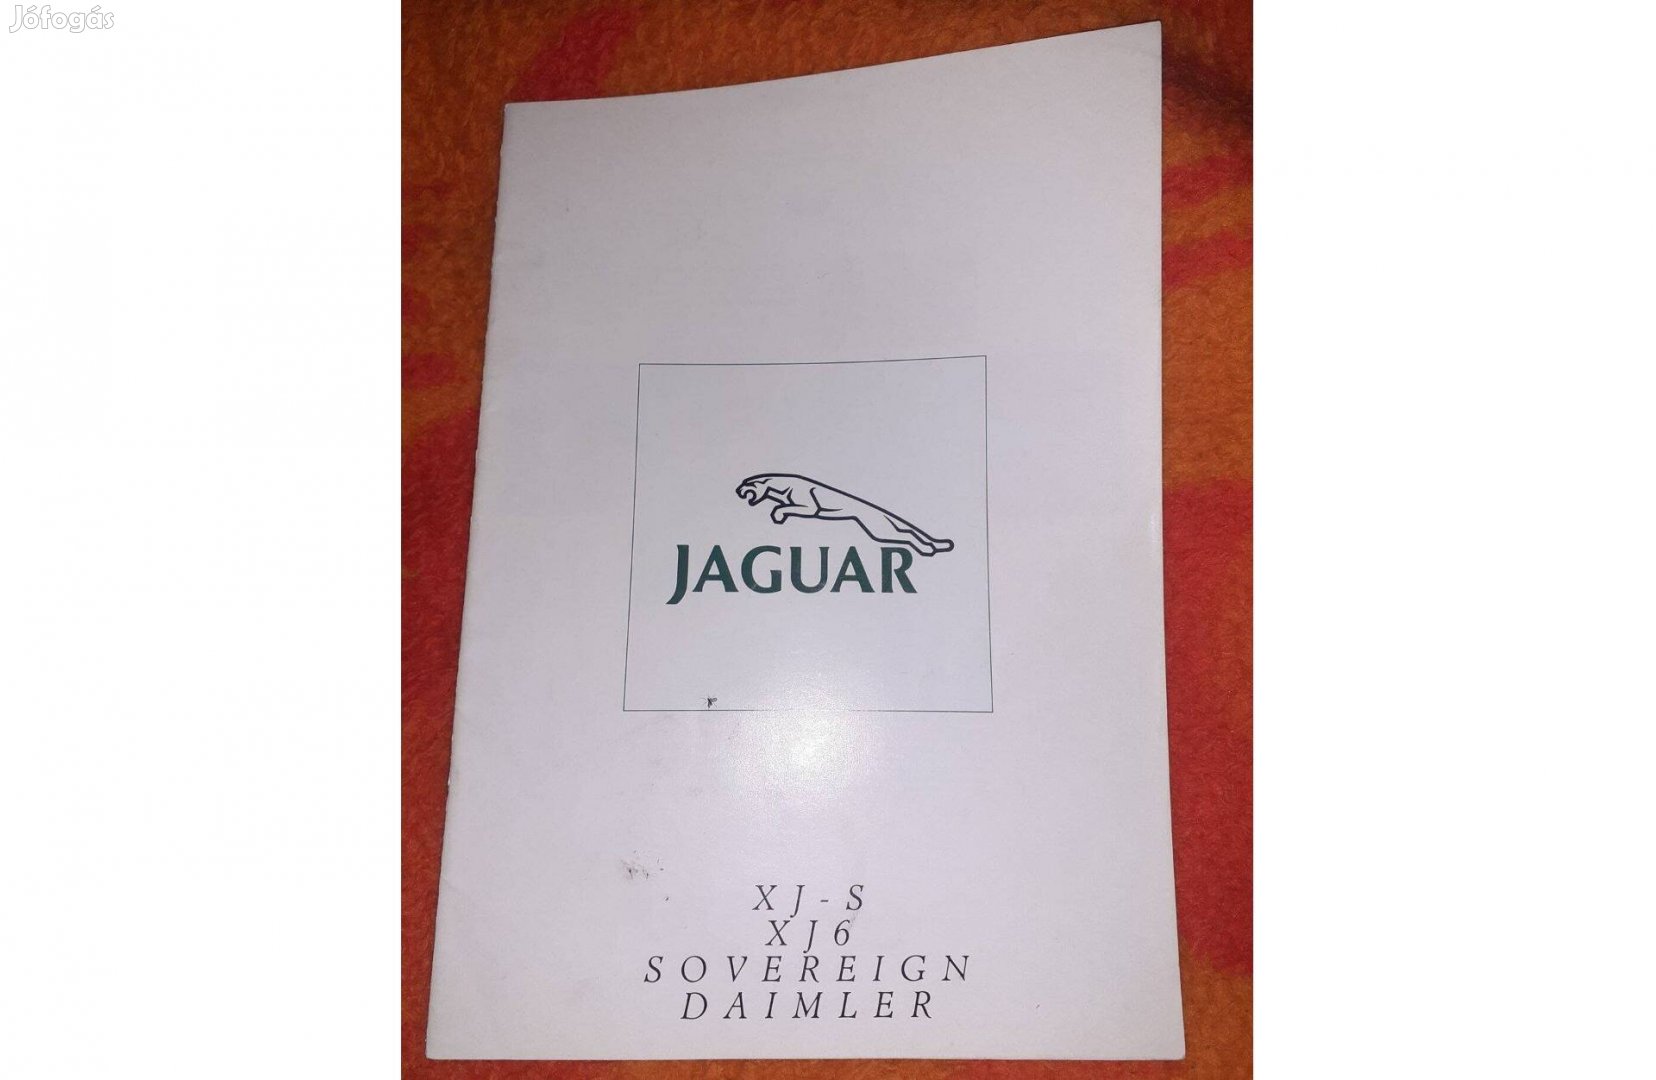 Eladó Jaguar Daimler Xj-S Xj6 Sovereign Angol összefoglaló prospektus